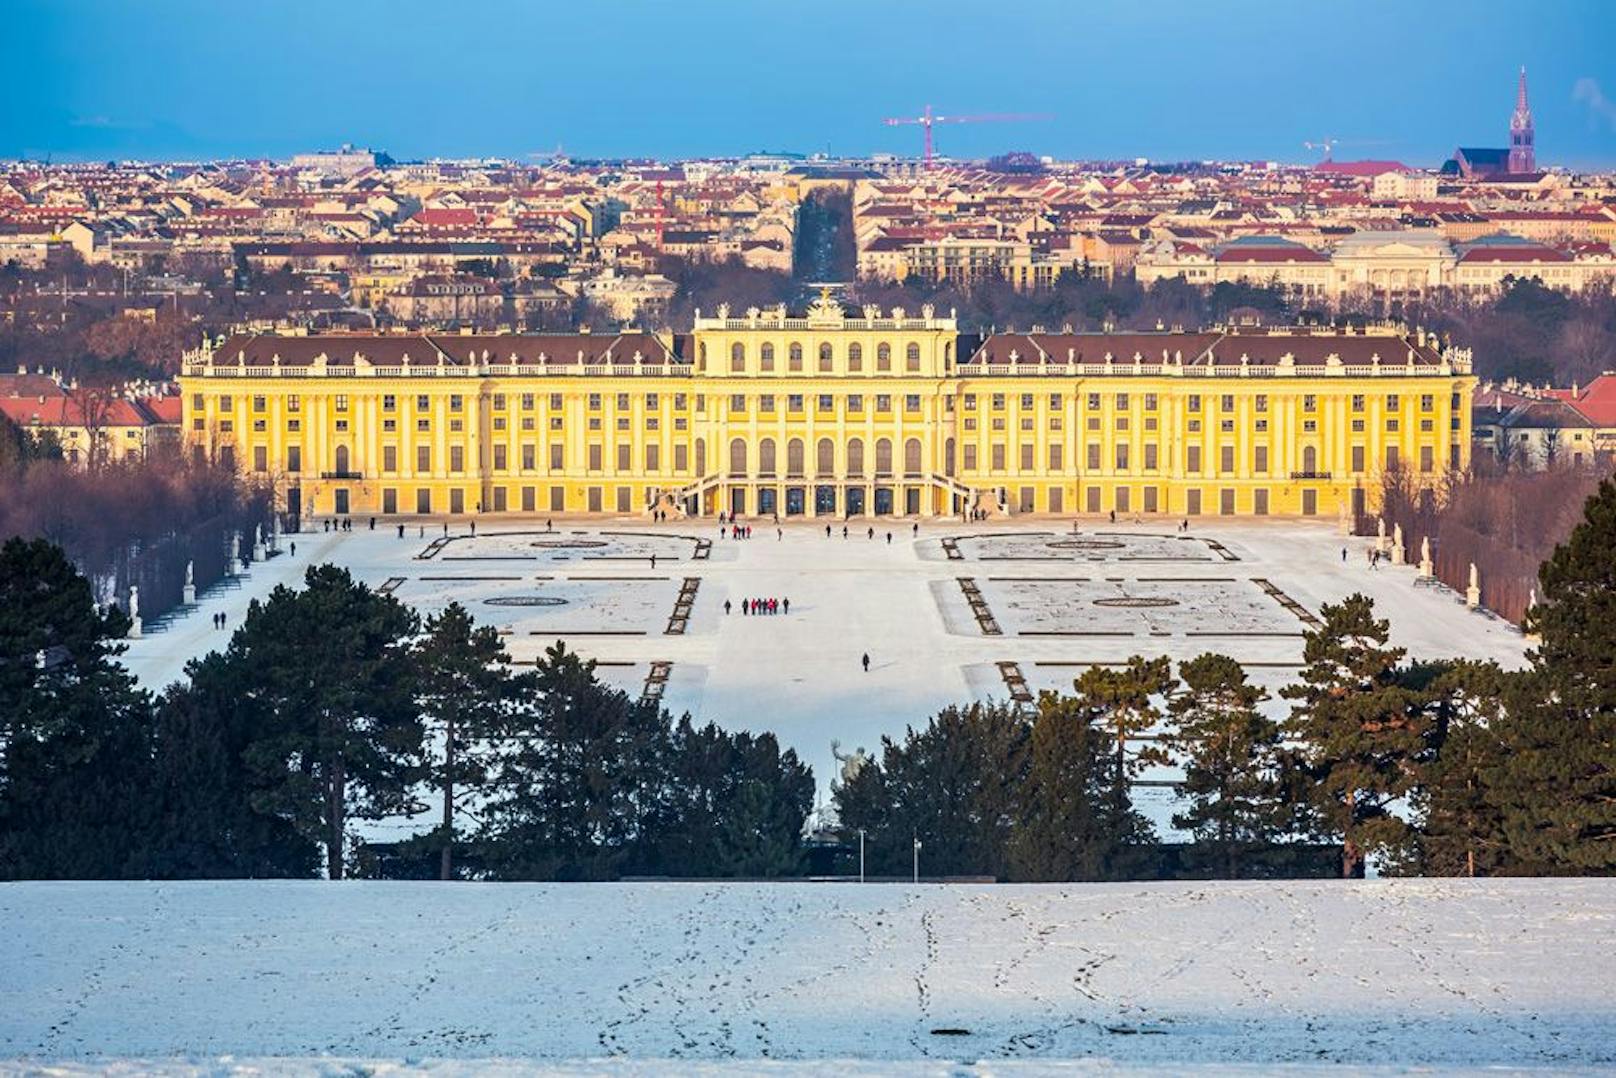 Der Wien Tourismus hat weiter mit der Coronakrise zu kämpfen. Im Vorjahr stiegen die Nächtigungszahlen zwar wieder leicht, dennoch liegt man deutlich unter den Rekordwerten der Vor-Corona-Zeit.